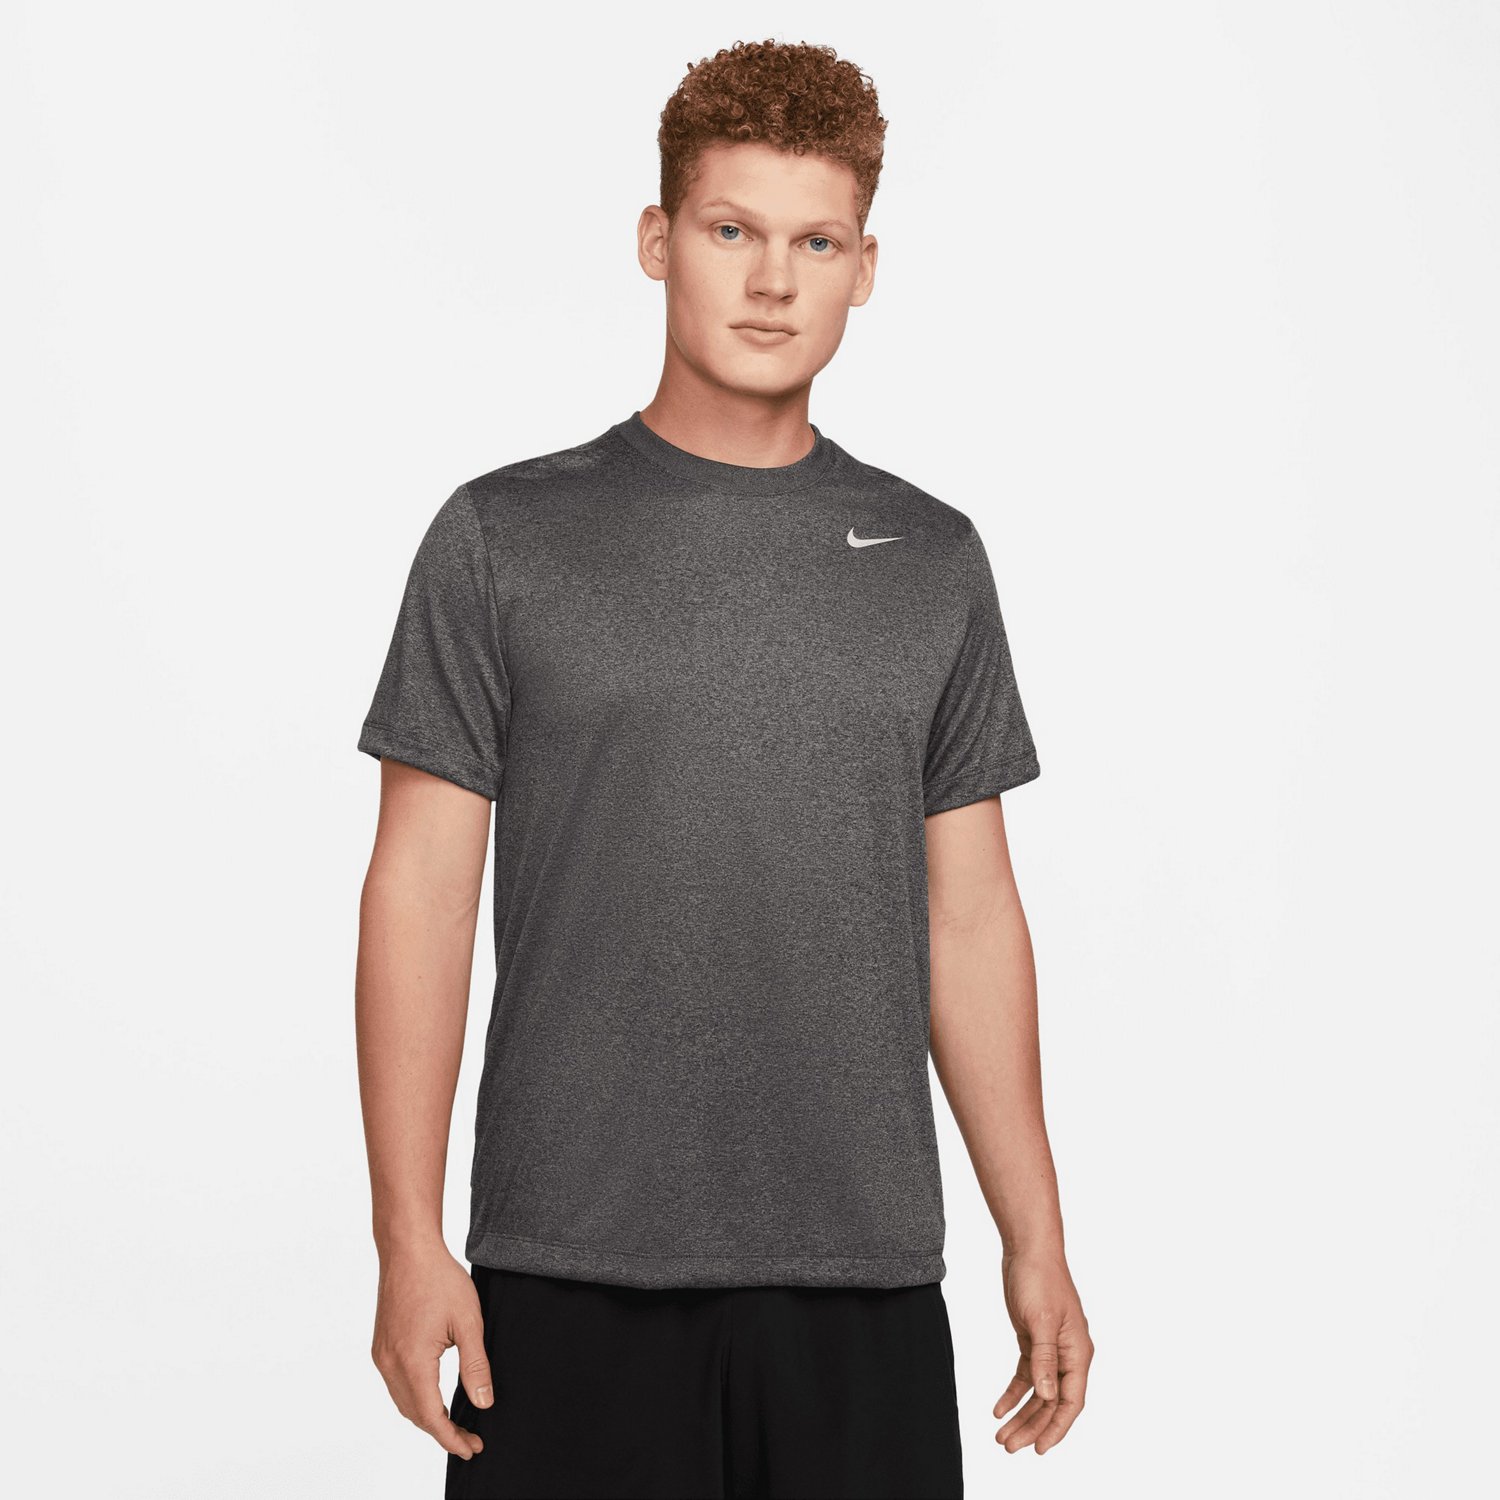 Nike Mens Dri-FIT Fitness T-shirt